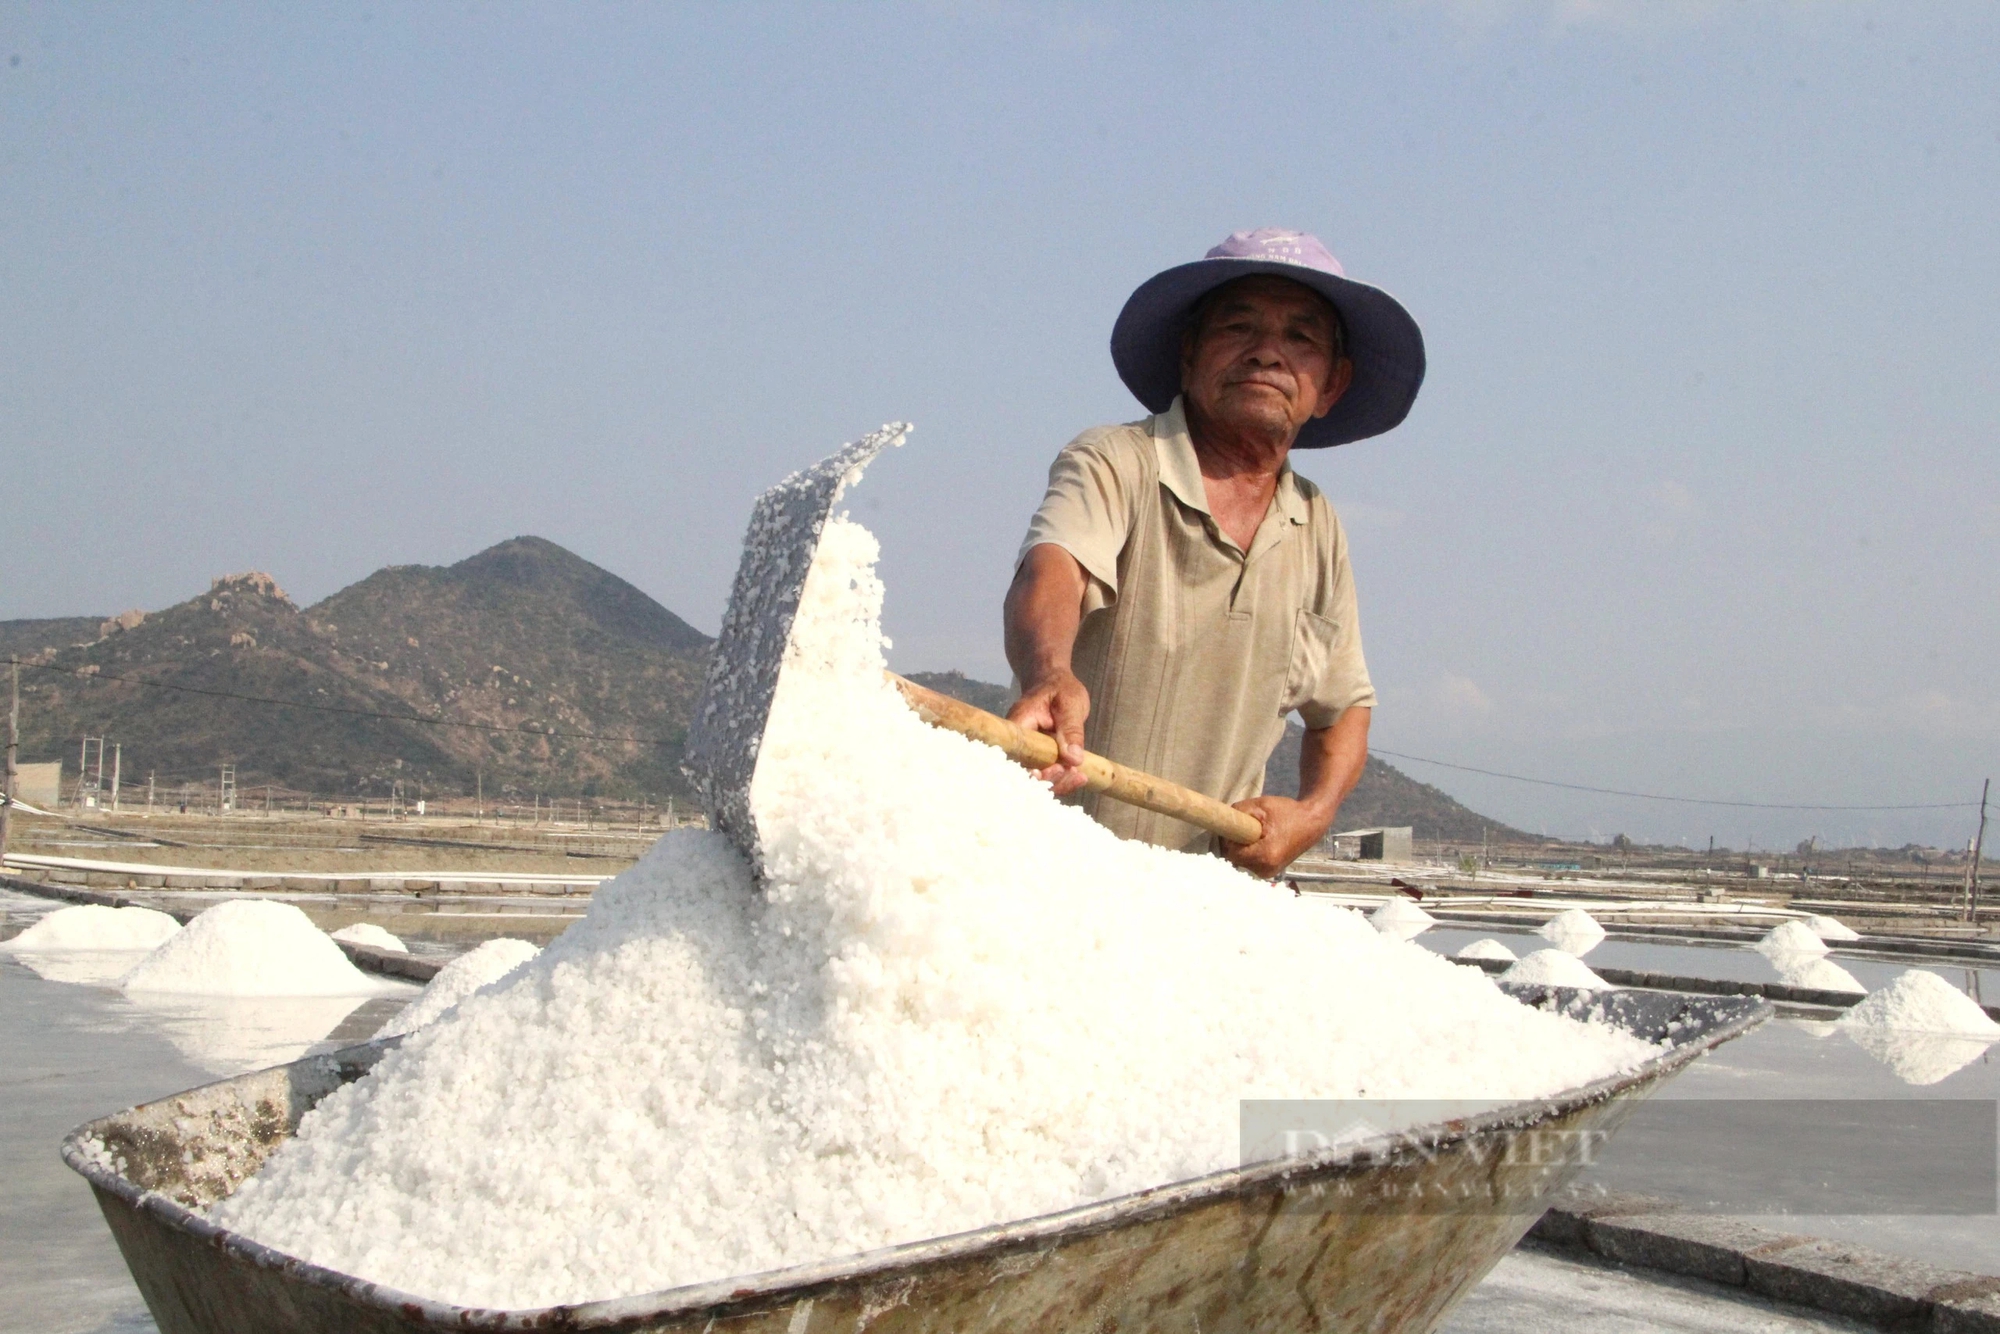 Diêm dân Ninh Thuận đầu năm ra đồng thu hoạch muối, ai cũng vui vì sản lượng tăng - Ảnh 4.